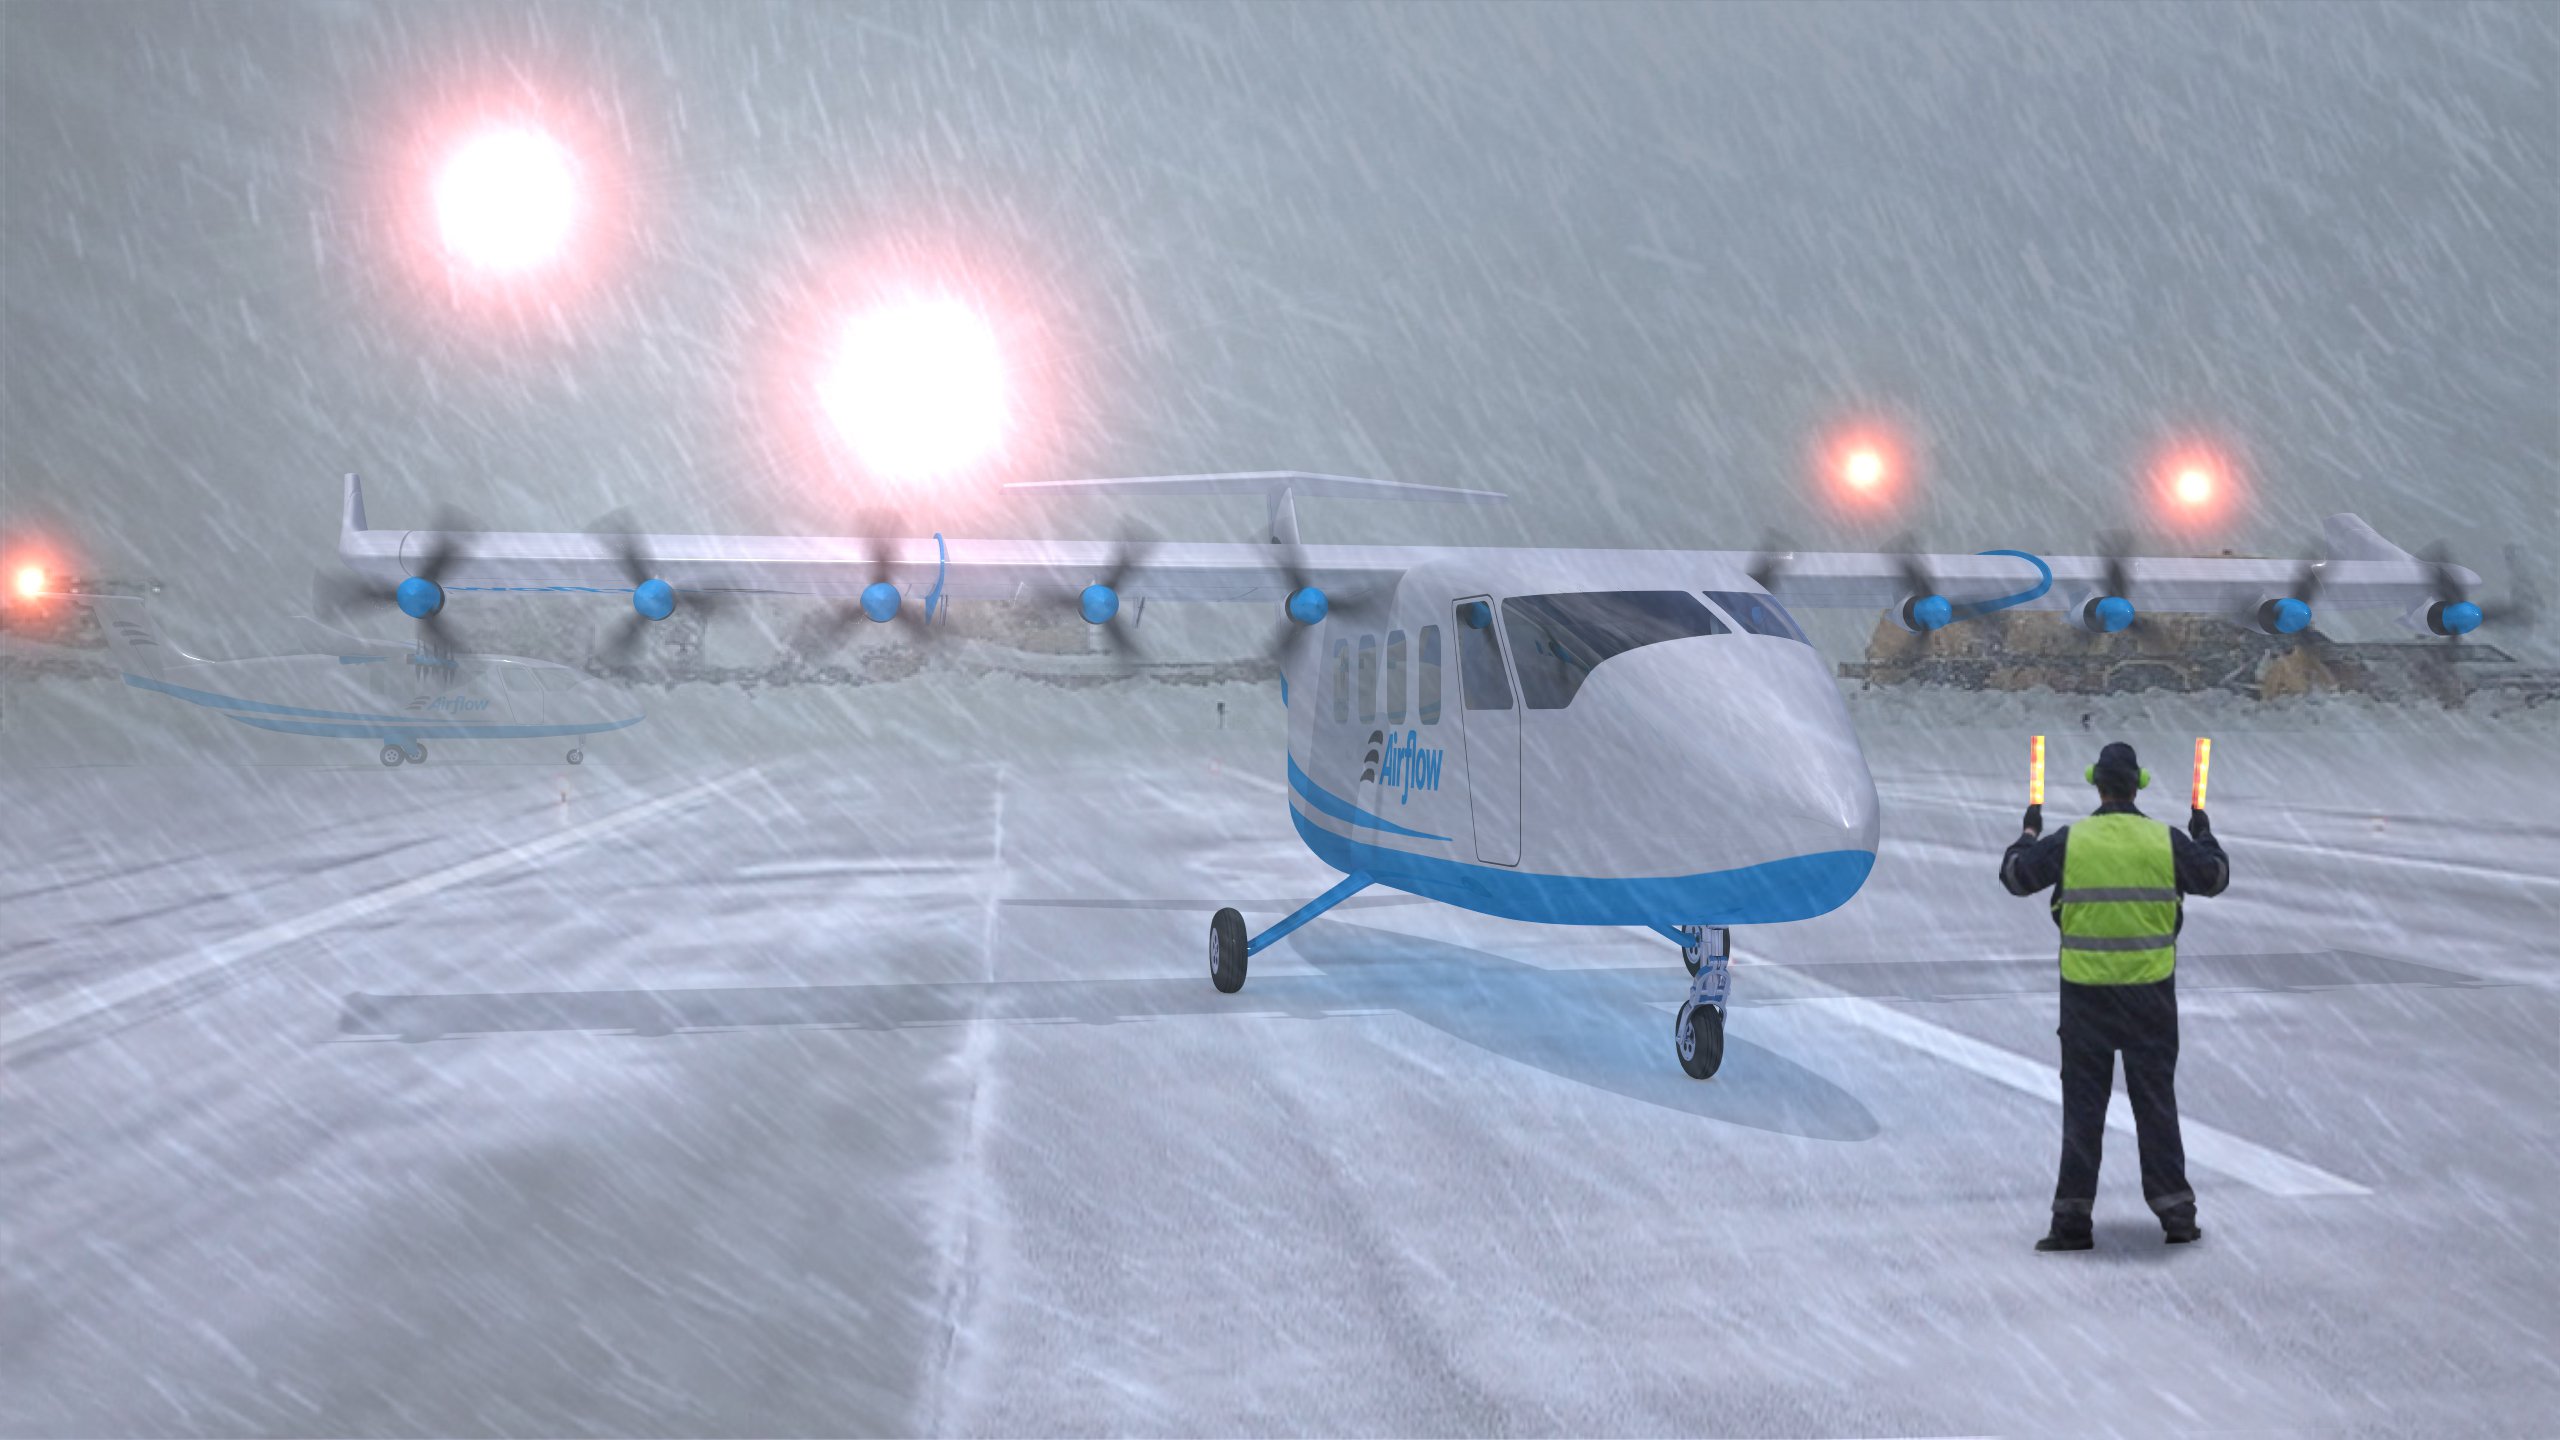 airflow-aircraft-runway-snowstorm